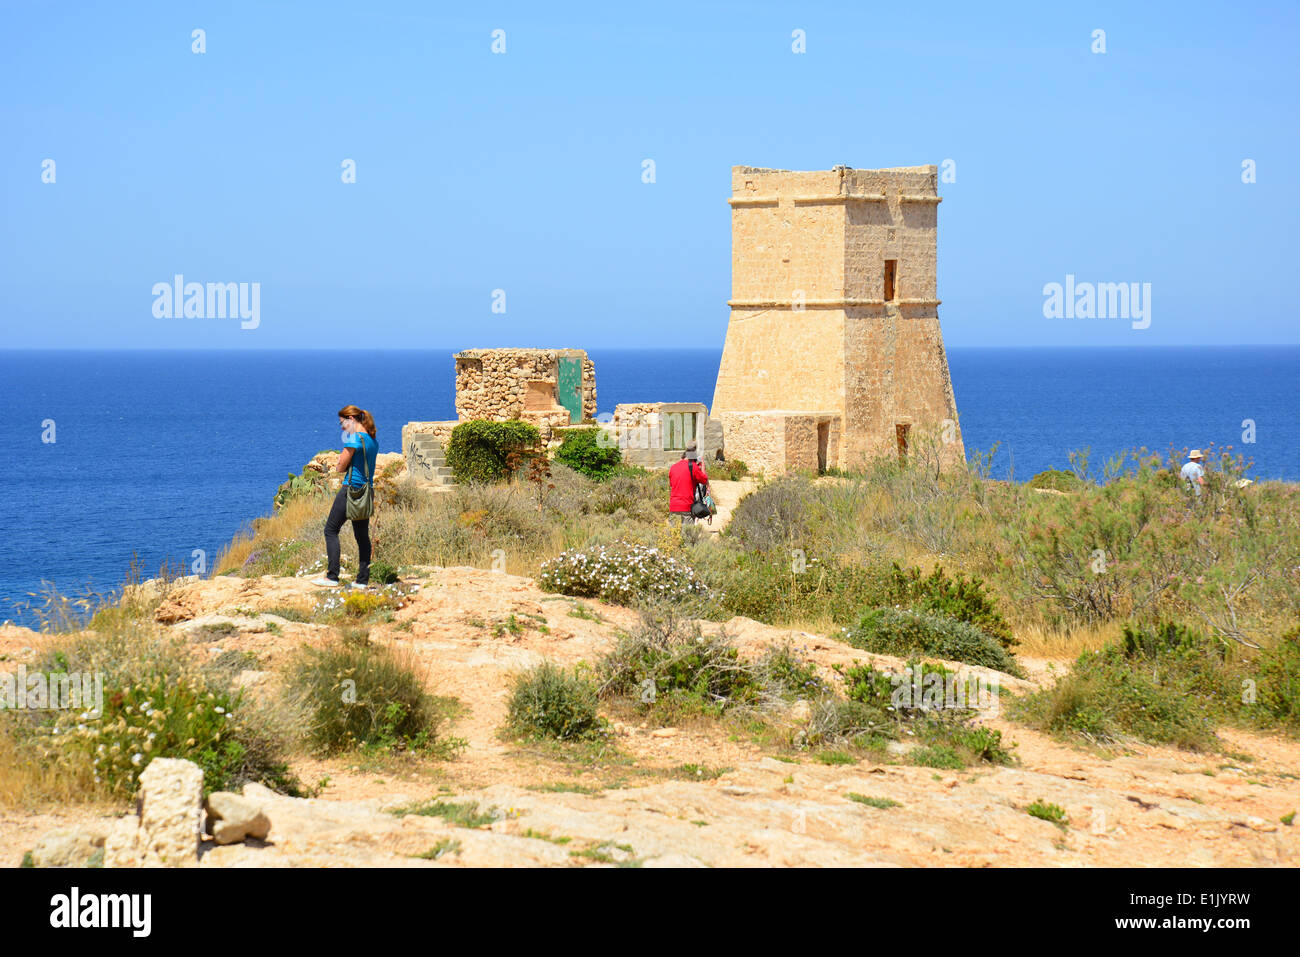 La Tour, Għajn Tuffieħa Bay, quartier Nord, Malte Majjistral Région, République de Malte Banque D'Images